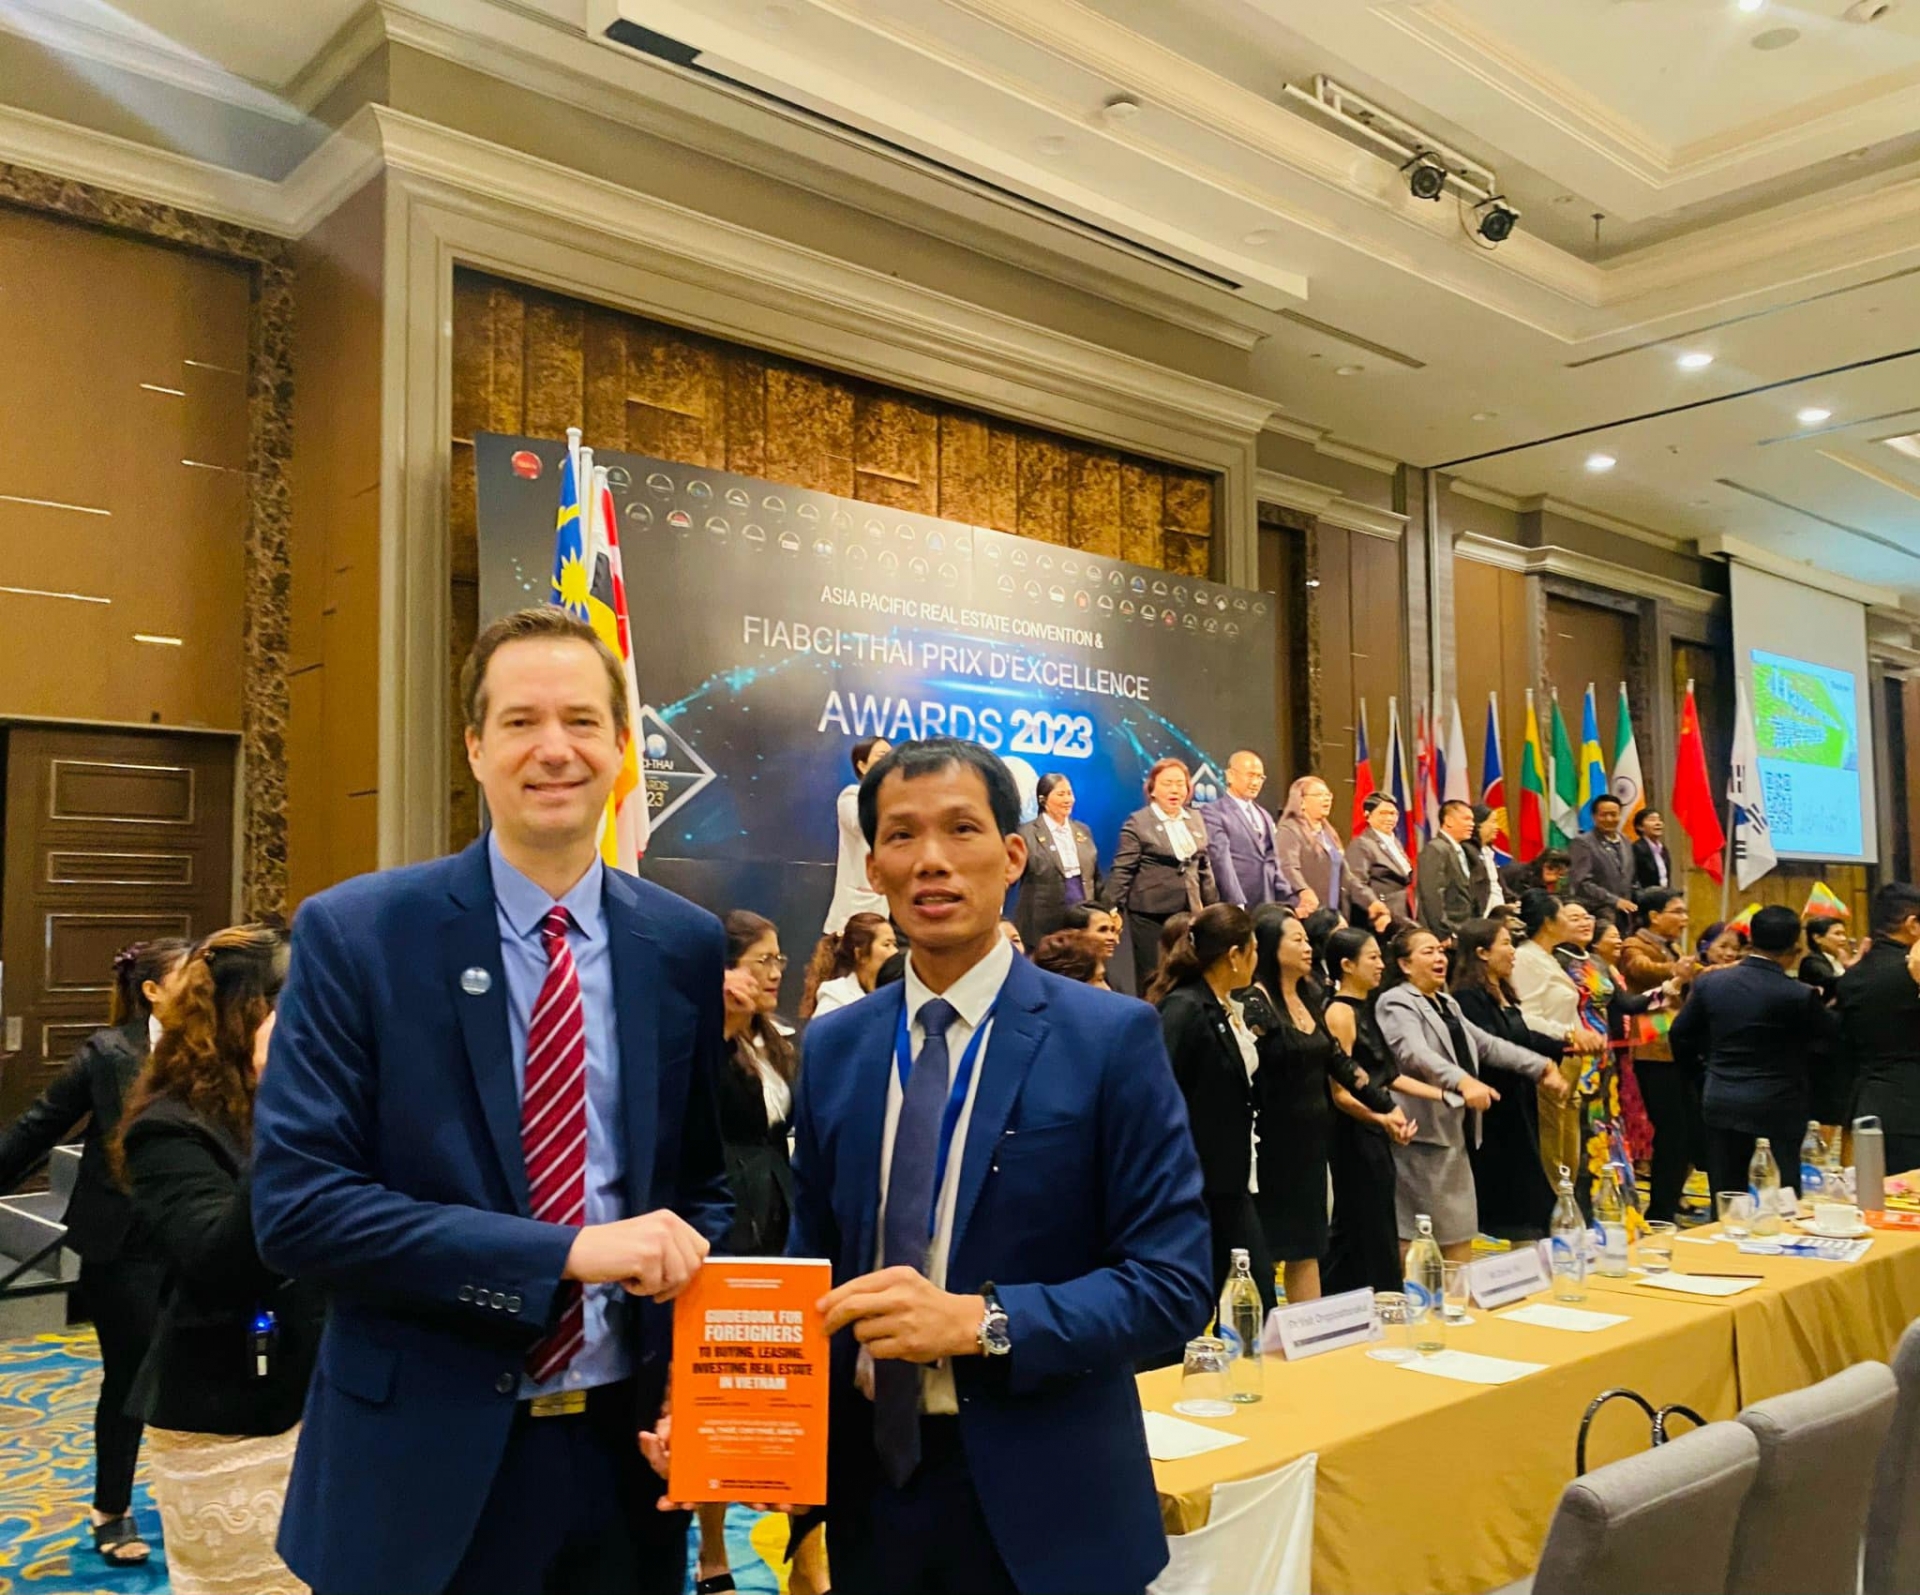 Thị trường bất động sản và du lịch Thái Lan: Khả năng thích ứng linh hoạt, chính sách quyết đoán của Chính phủ và bài học cho Việt Nam